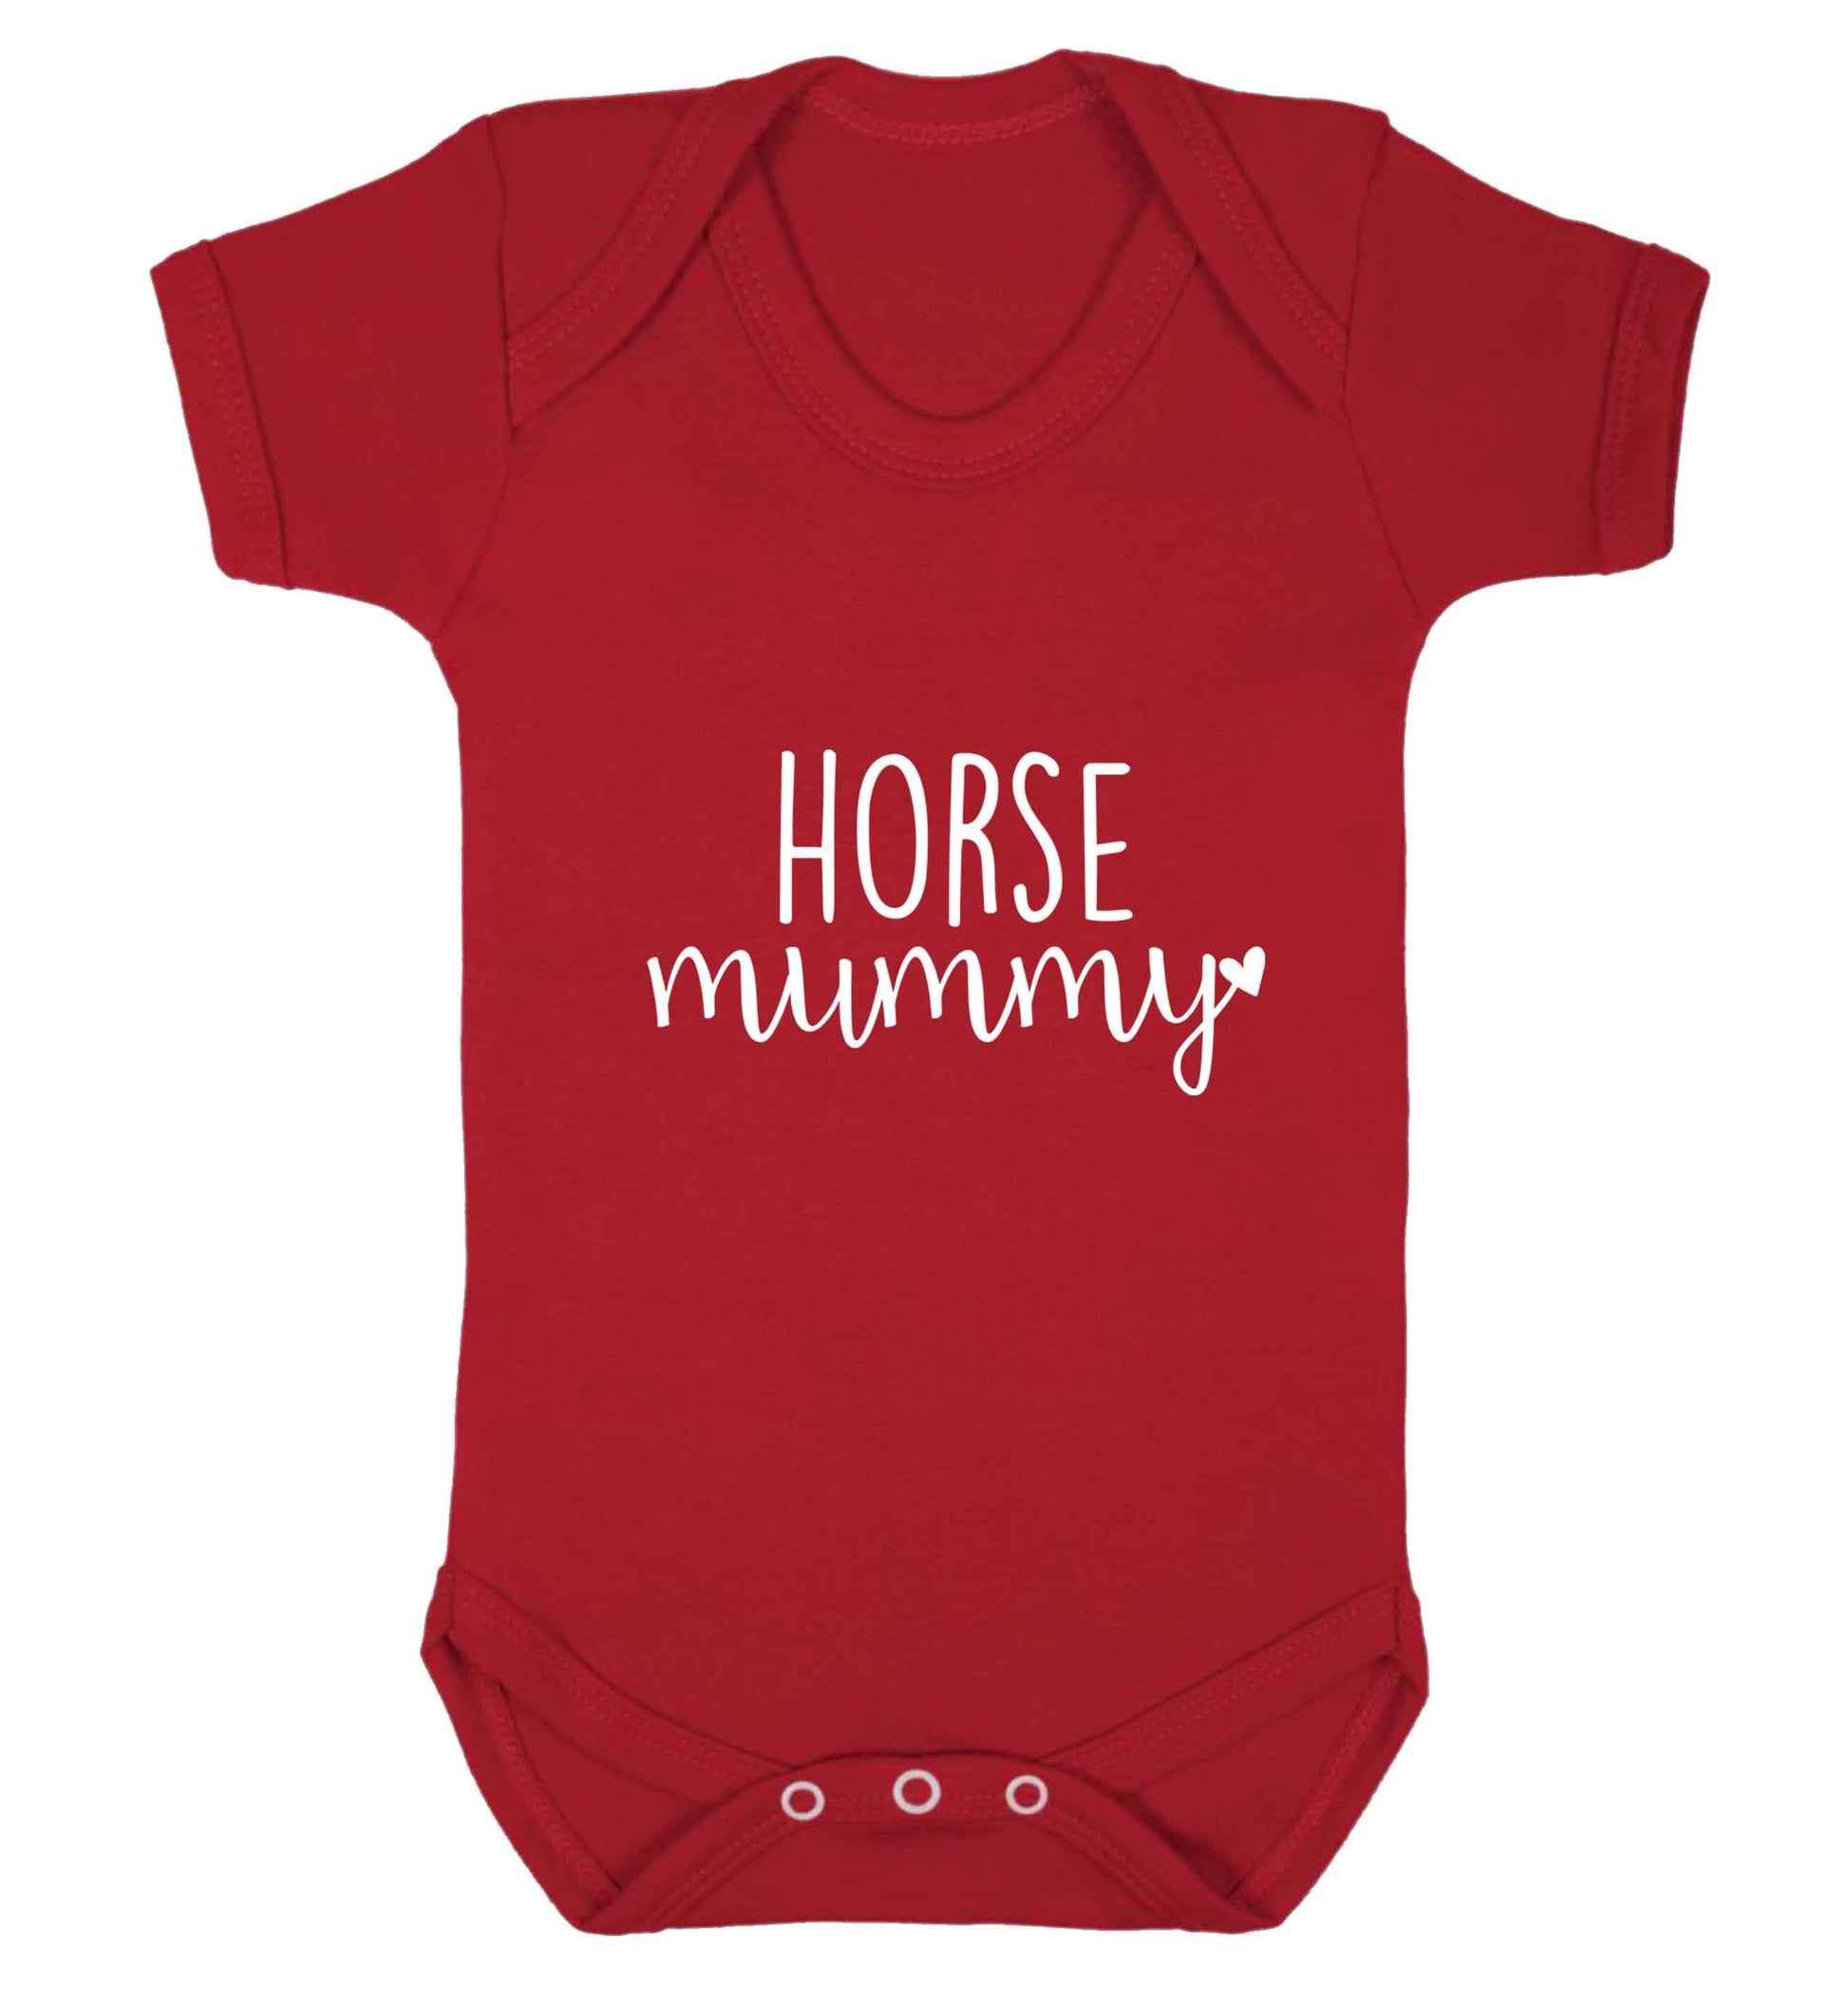 Horse mummy baby vest red 18-24 months